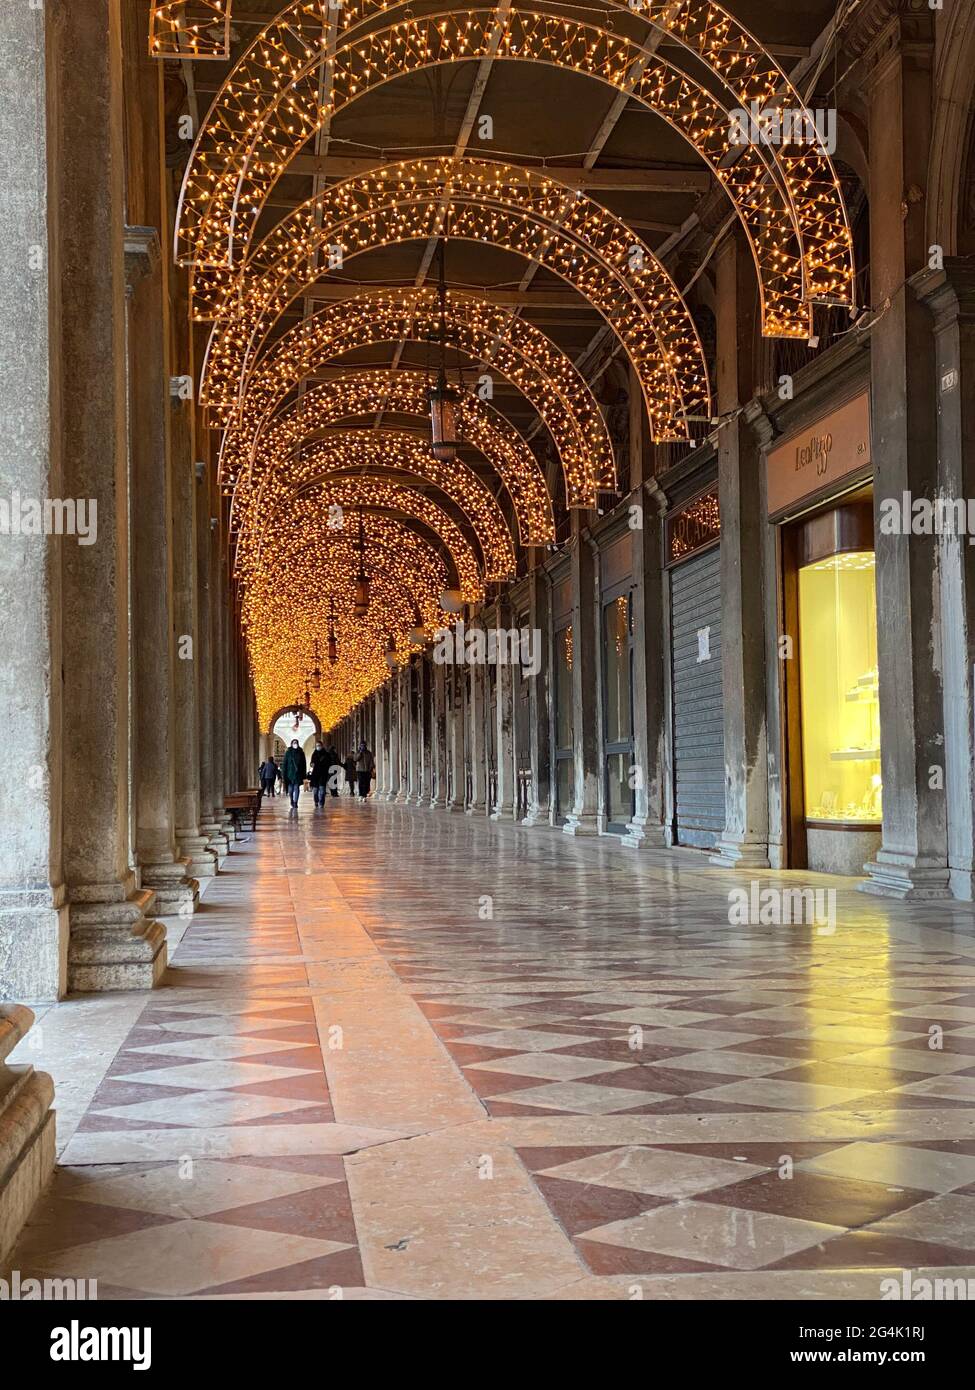 Venise, Italie, 13 février 2021 - place Saint Marc, tous les magasins ferment pendant le confinement, coronavirus dans l'arche de luxe Banque D'Images